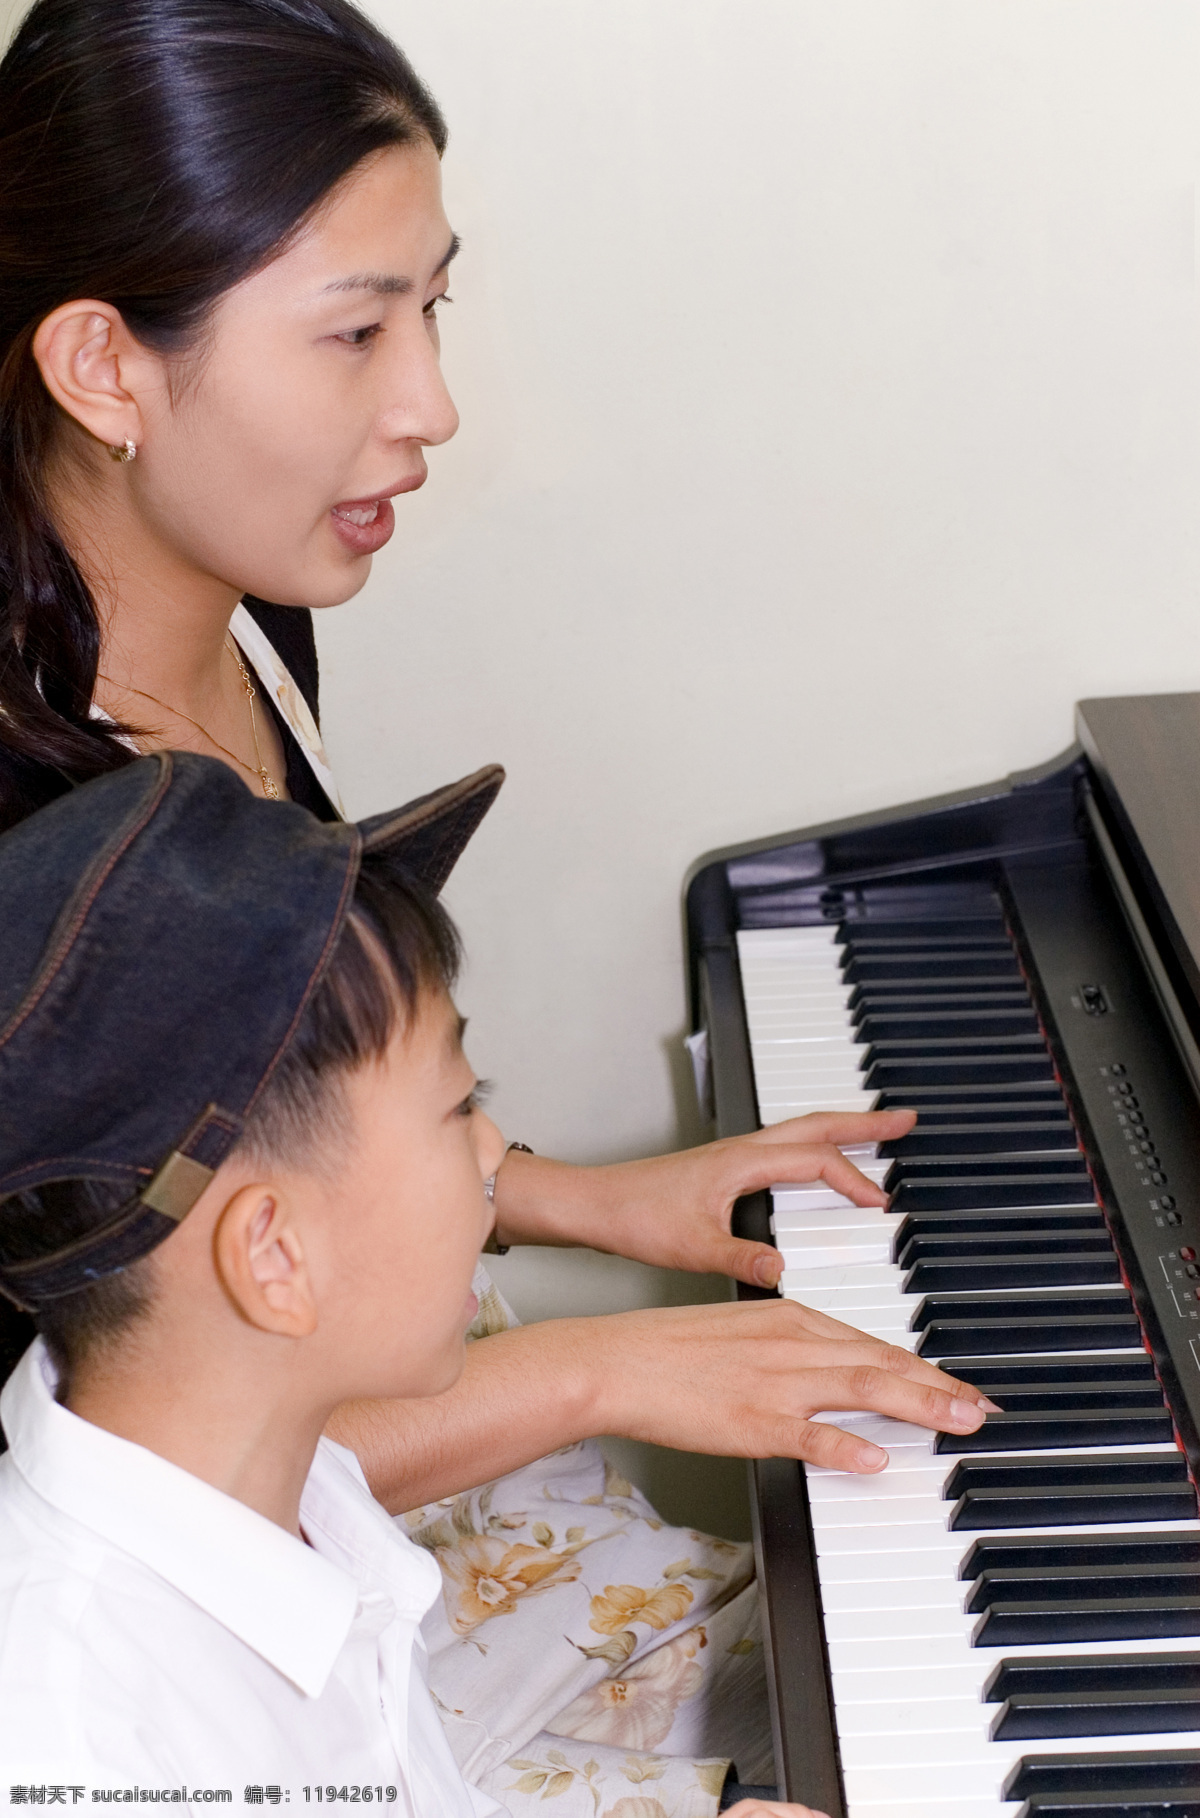 母子 钢琴 演奏 300 儿童幼儿 人物图库 摄影图库 母子钢琴演奏 儿童母子亲情 儿童亲子 psd源文件